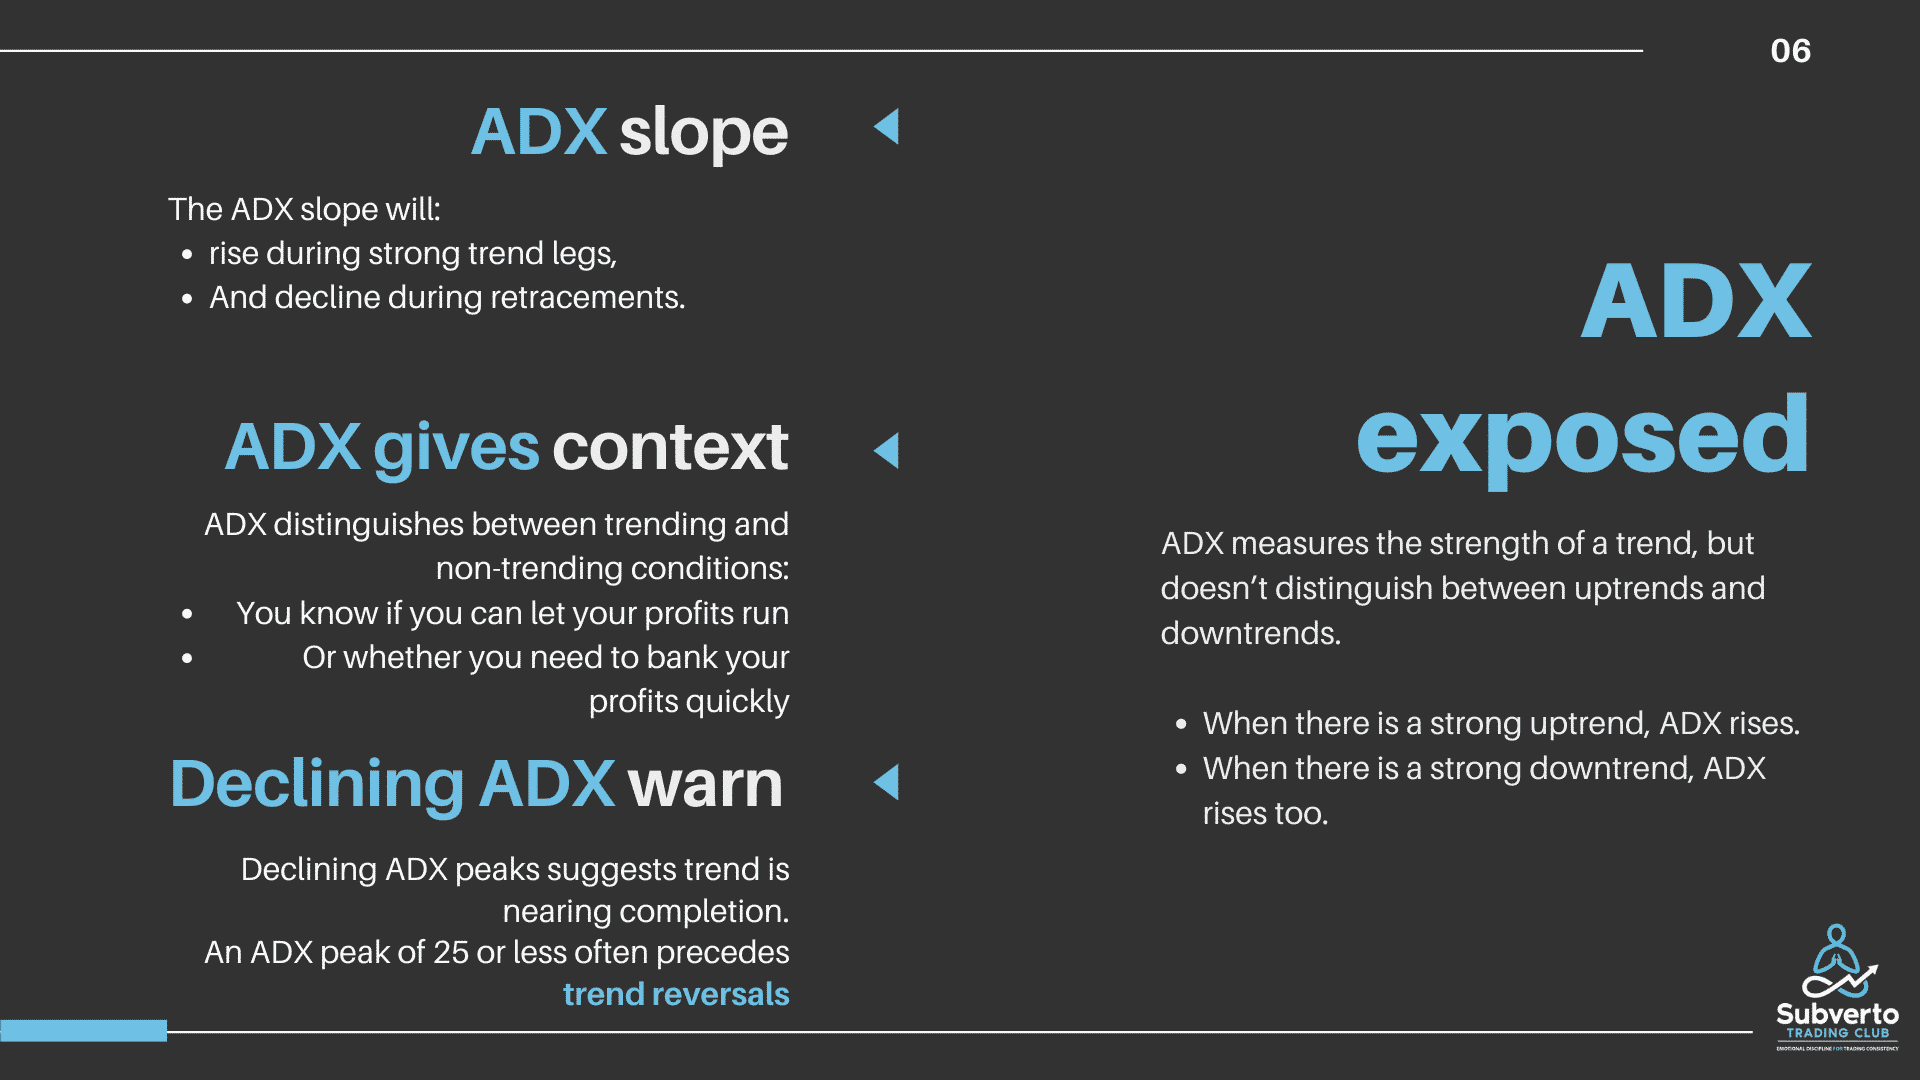 ADX explained